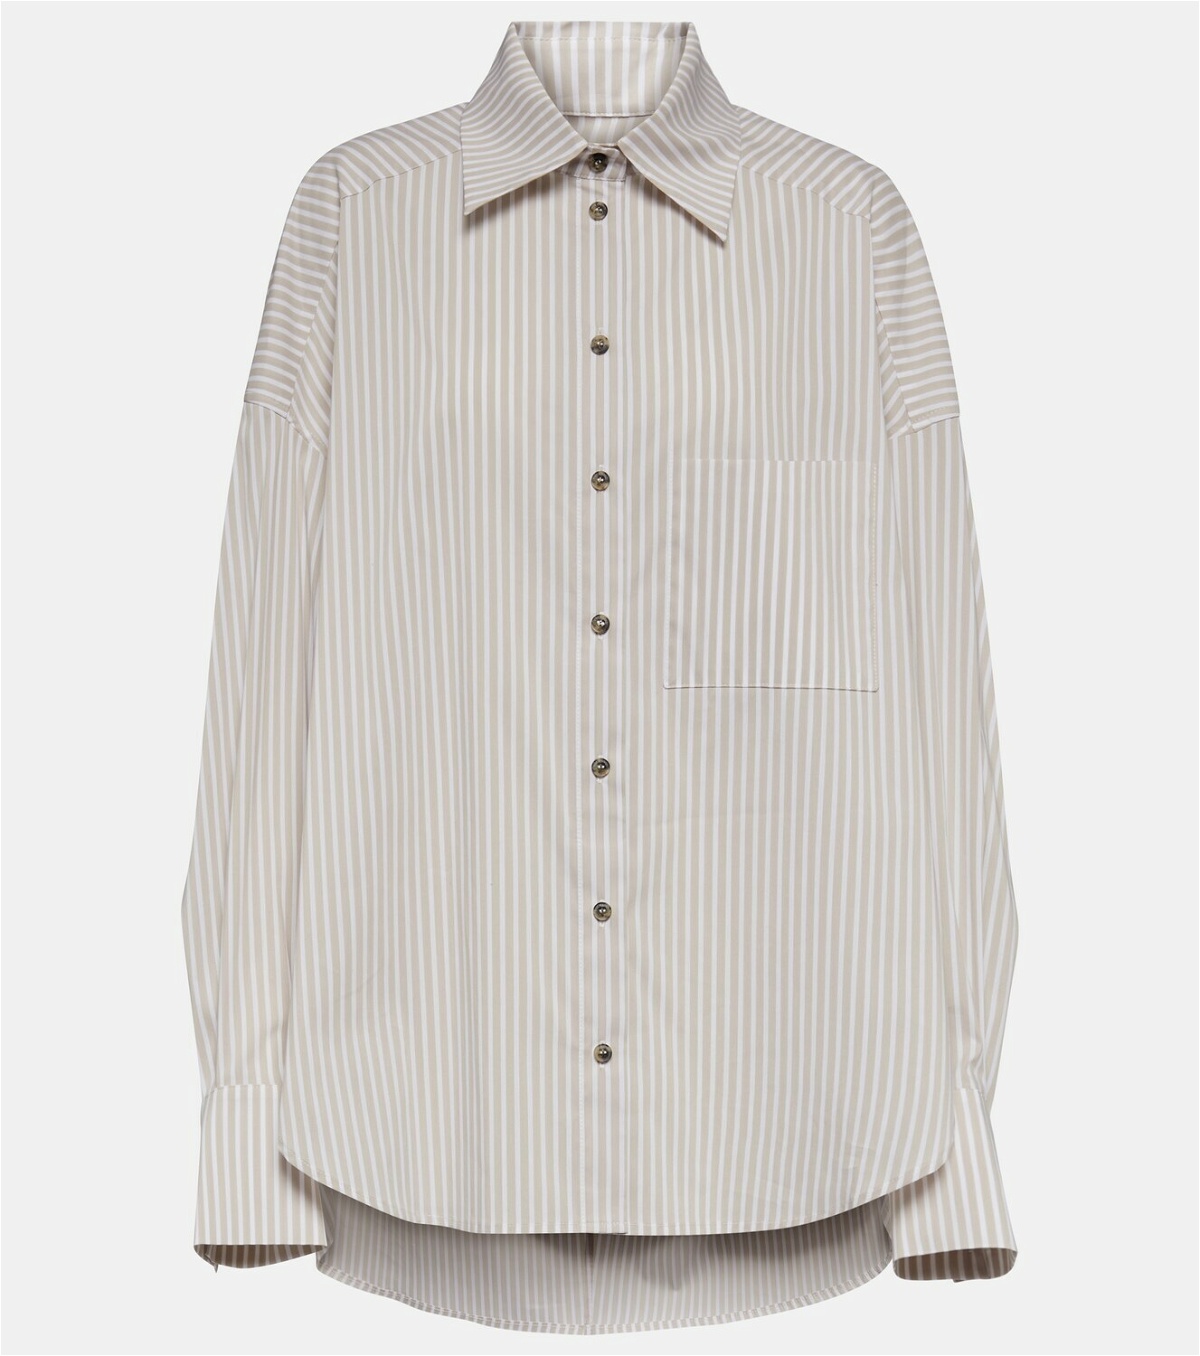 The Mannei Bilbao striped cotton-blend shirt